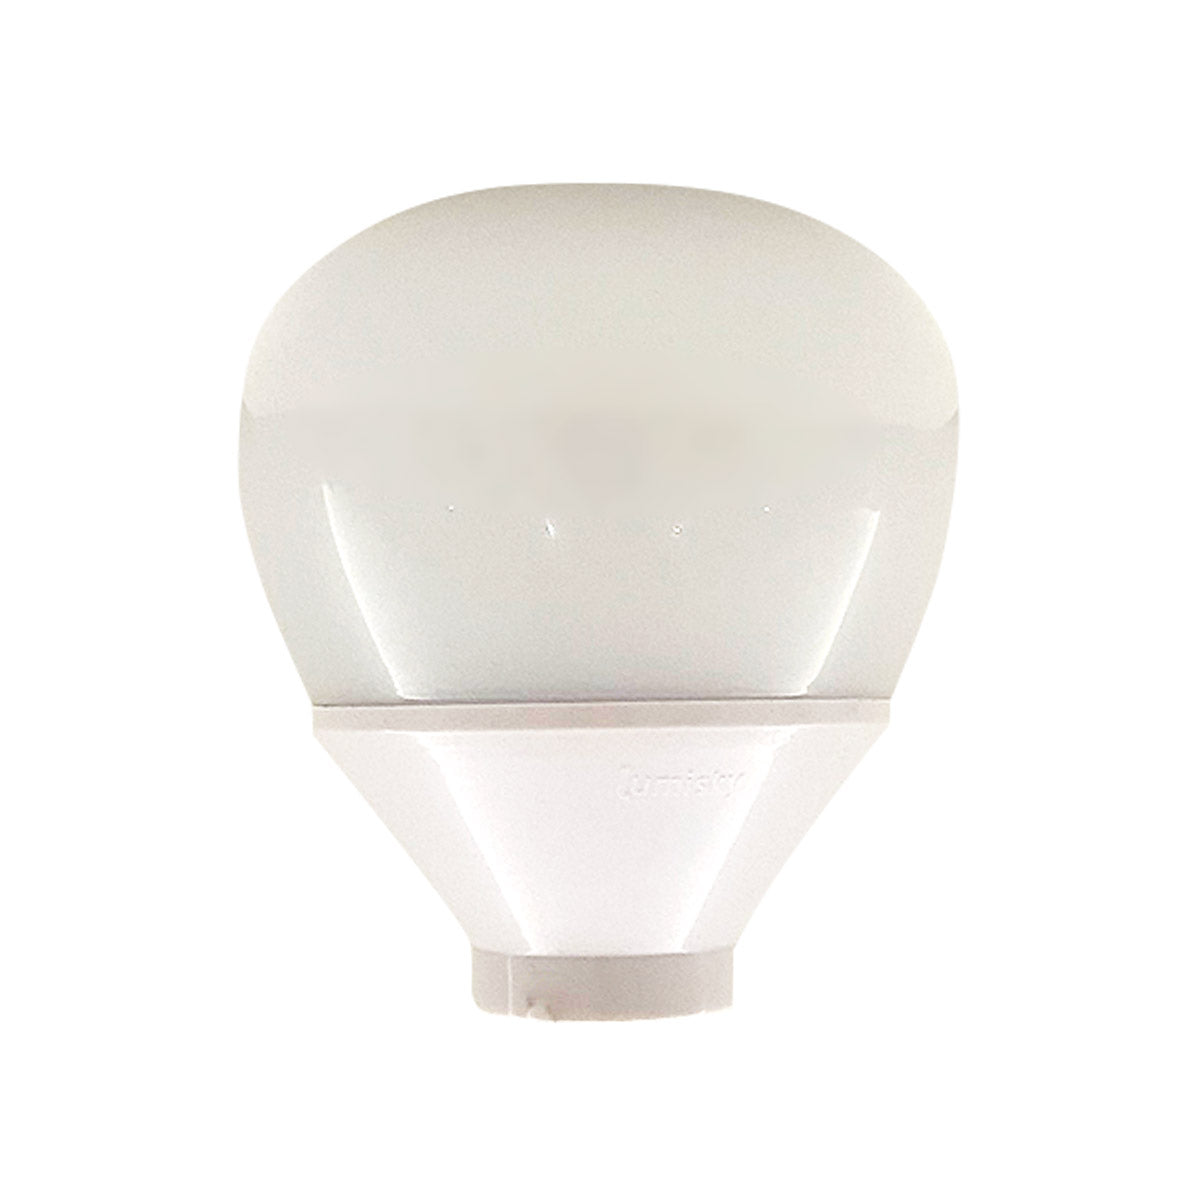 Lampe LED multicolore avec télécommande - Dimmable - Couleurs - Télécommande  - Ampoule